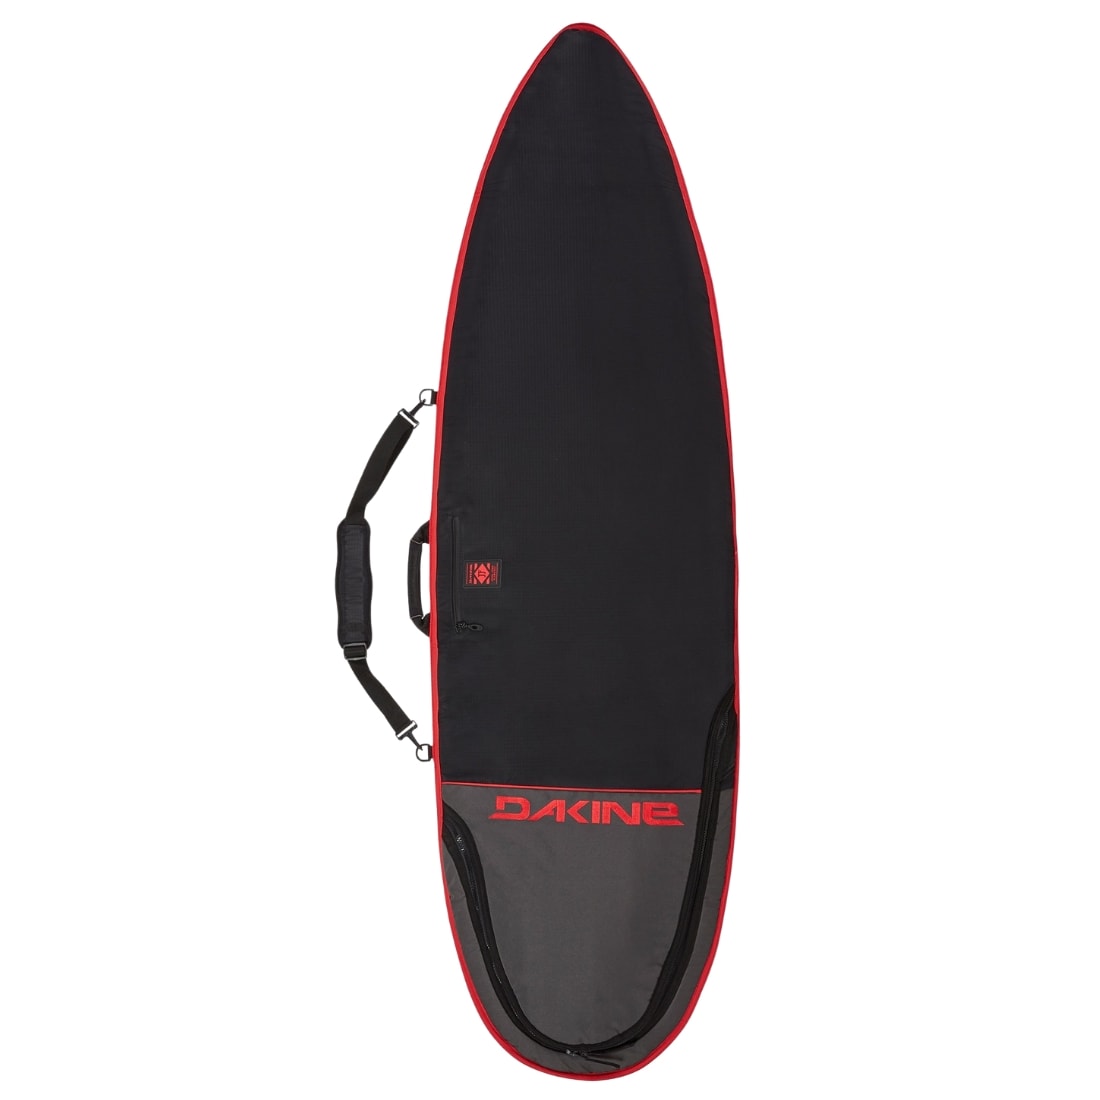 Dakine John John Florence 6ft 3 Mission Surfboard Bag - Black/Red